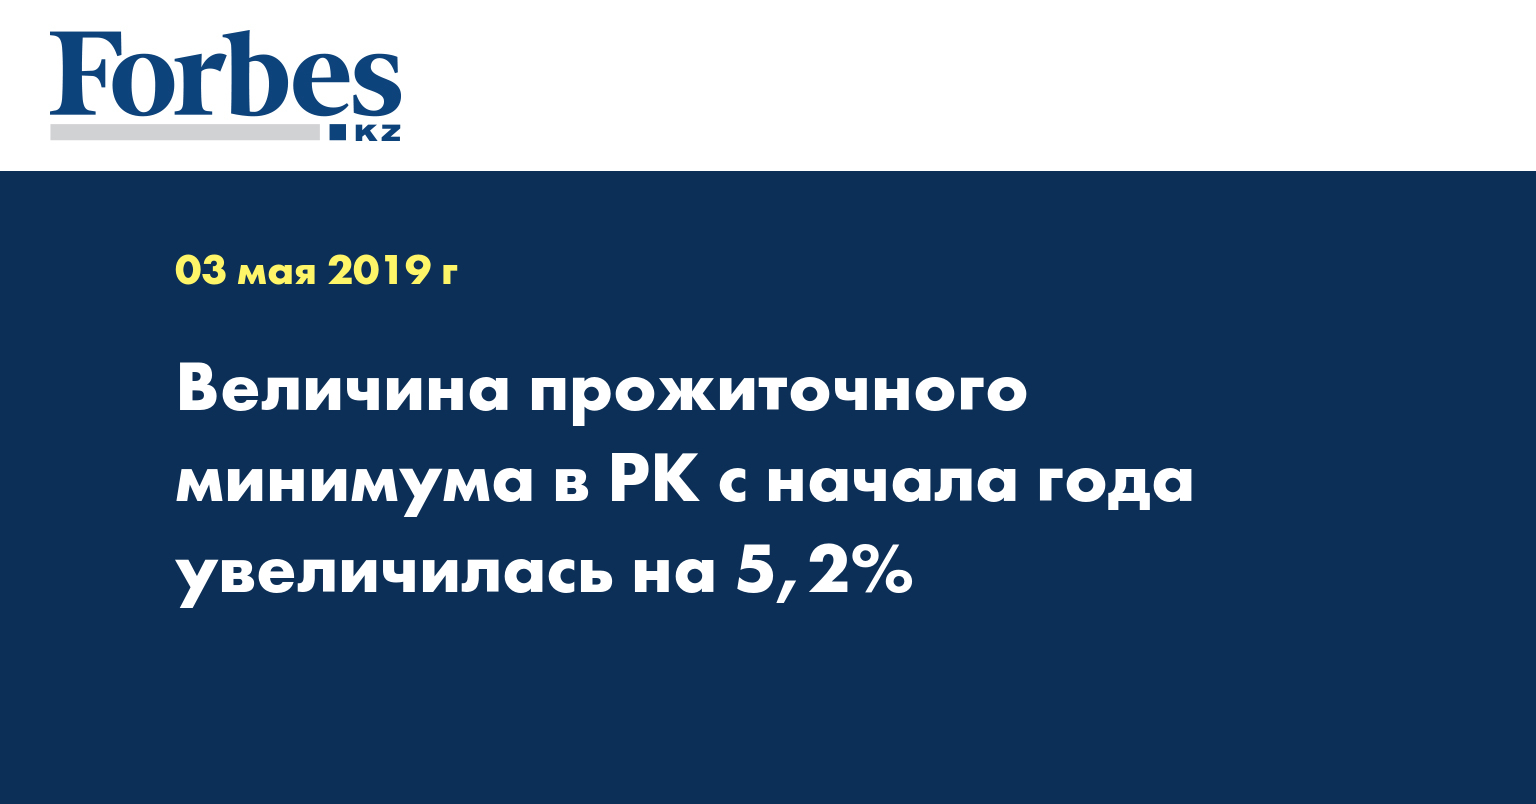 Величина прожиточного минимума в РК с начала года увеличилась на 5,2%